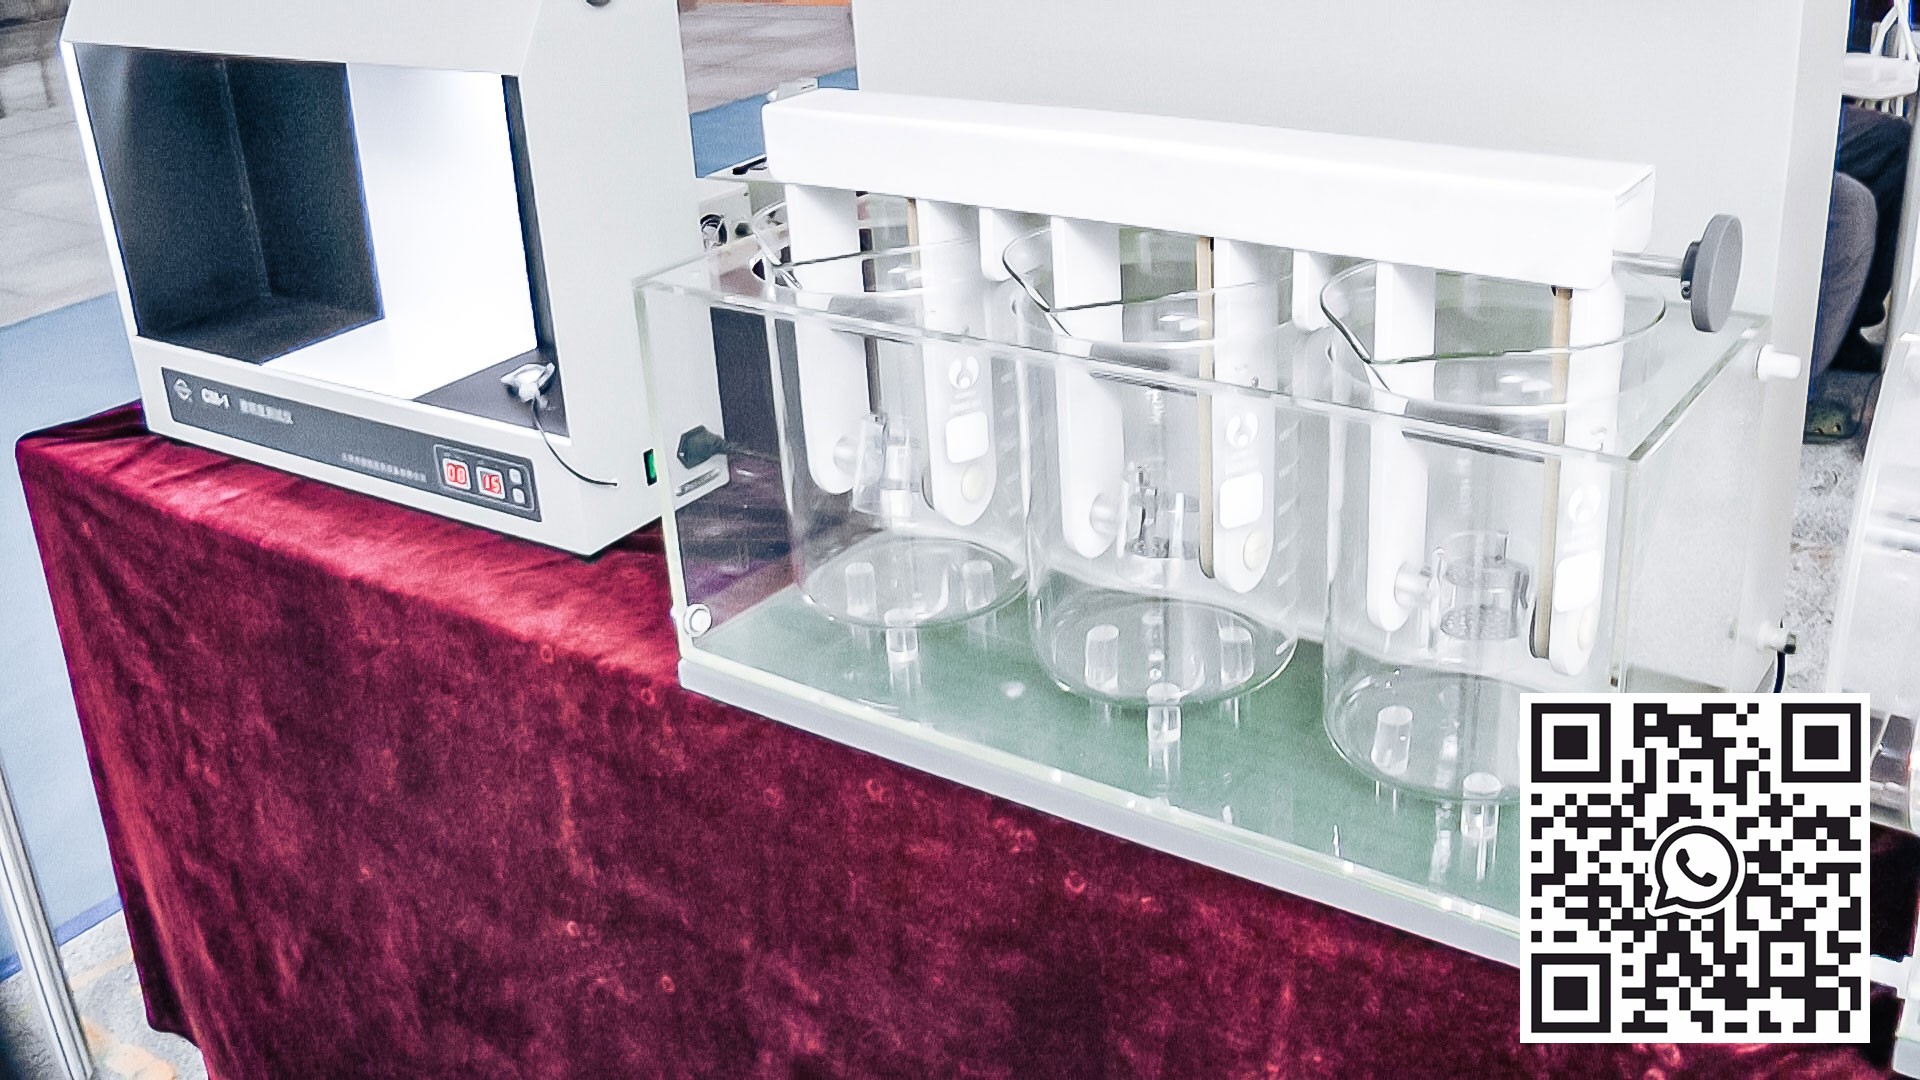 Equipo automático para pruebas de calidad de comprimidos y cápsulas en la producción farmacéutica Austria